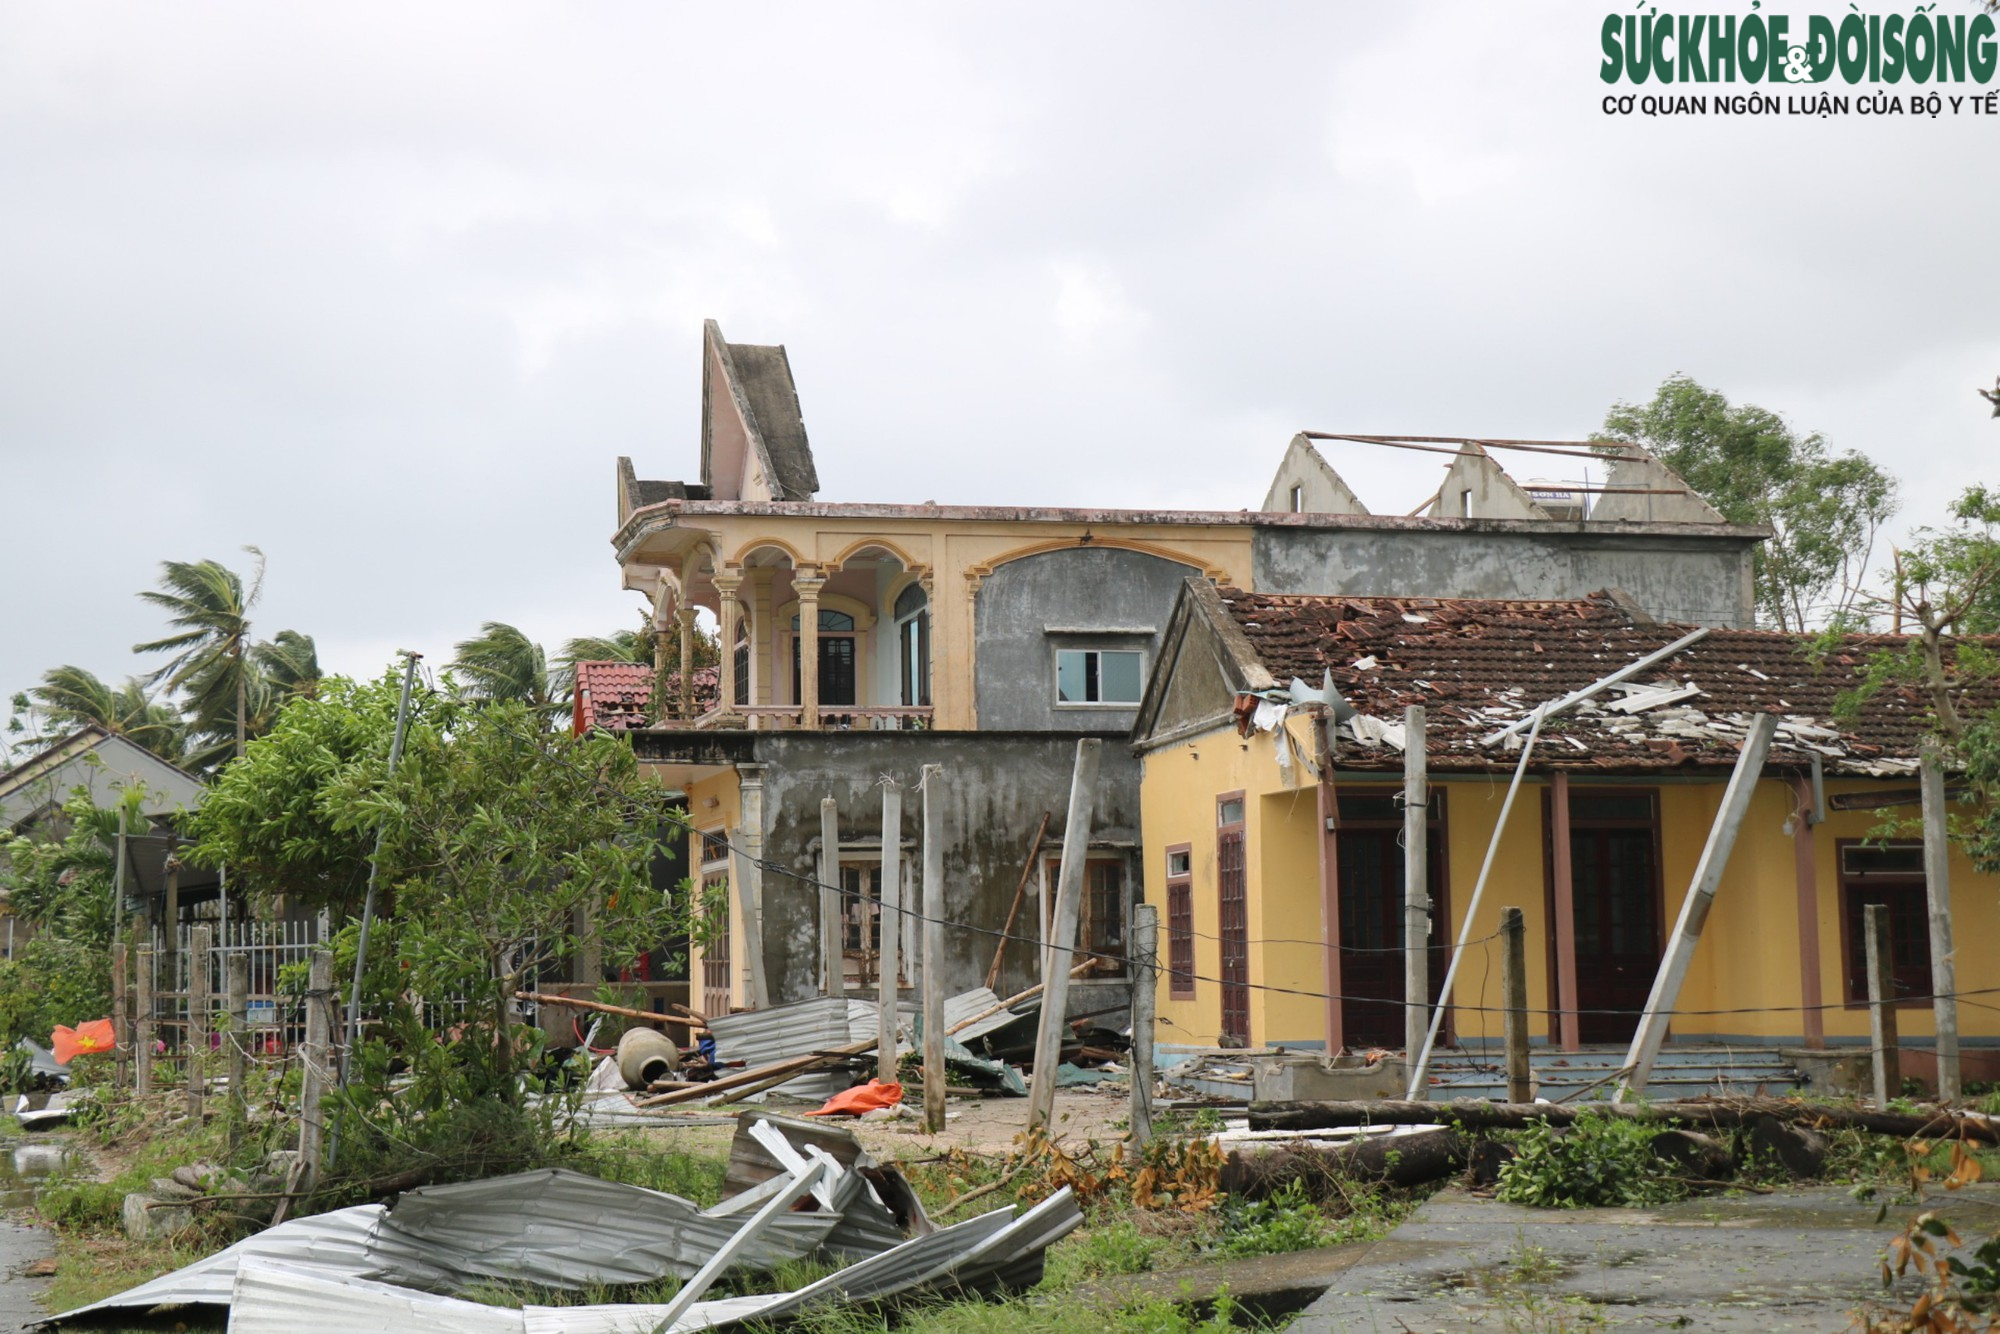 Nhà cửa tan hoang sau bão Noru, người dân miền biển Thừa Thiên Huế vẫn chưa hết bàng hoàng - Ảnh 5.